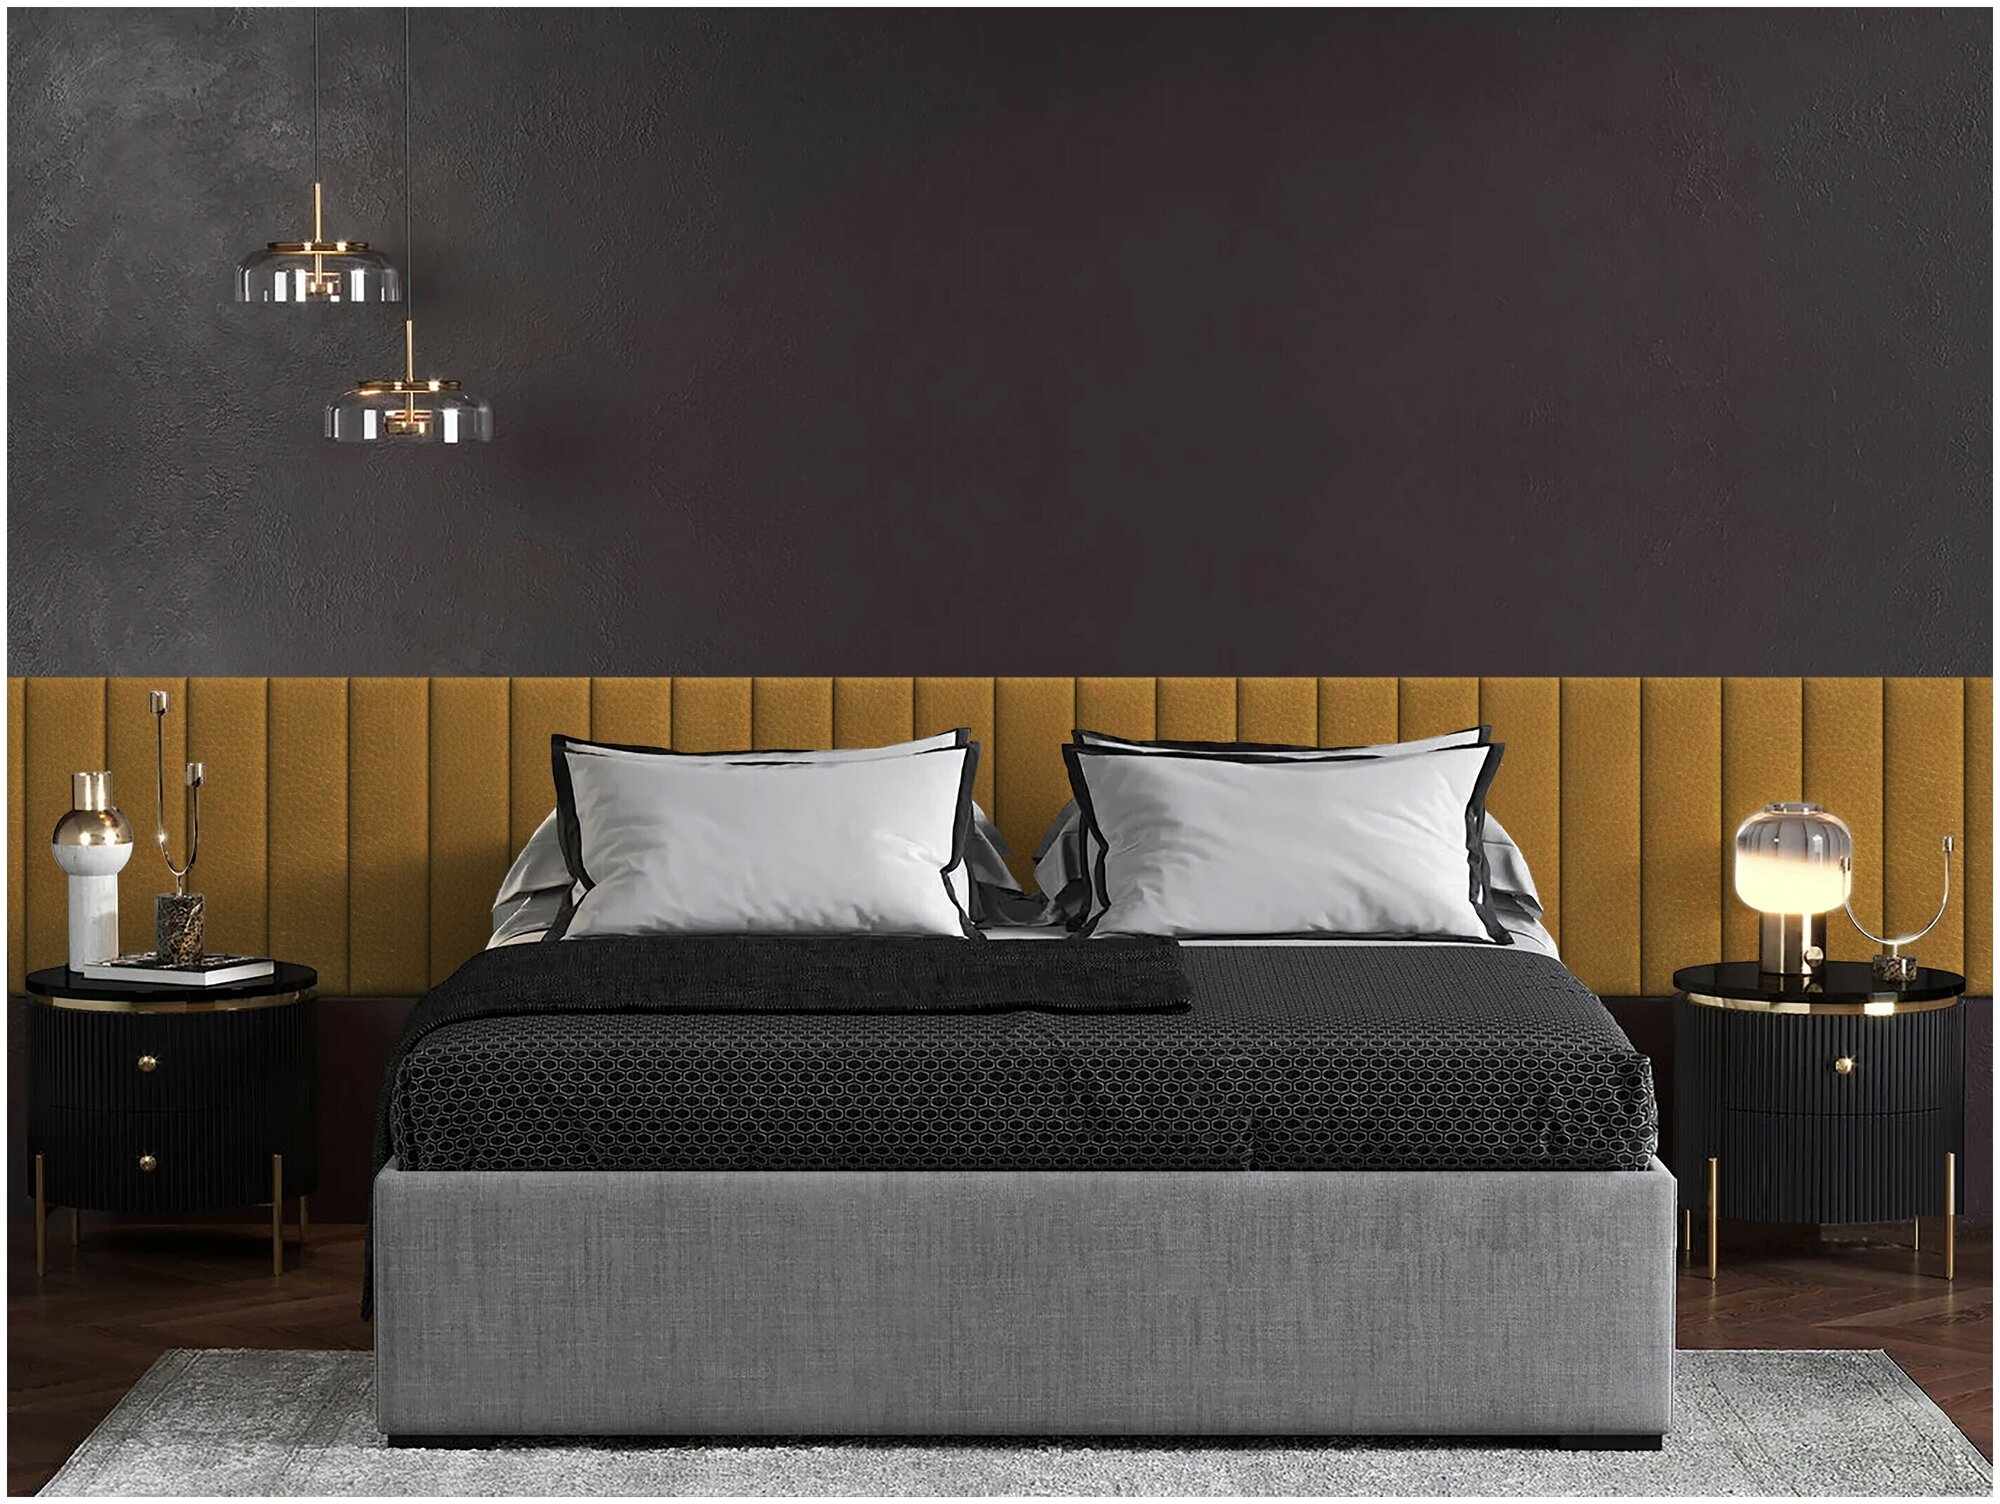 Панель кровати Eco Leather Gold 15х60 см 4 шт.